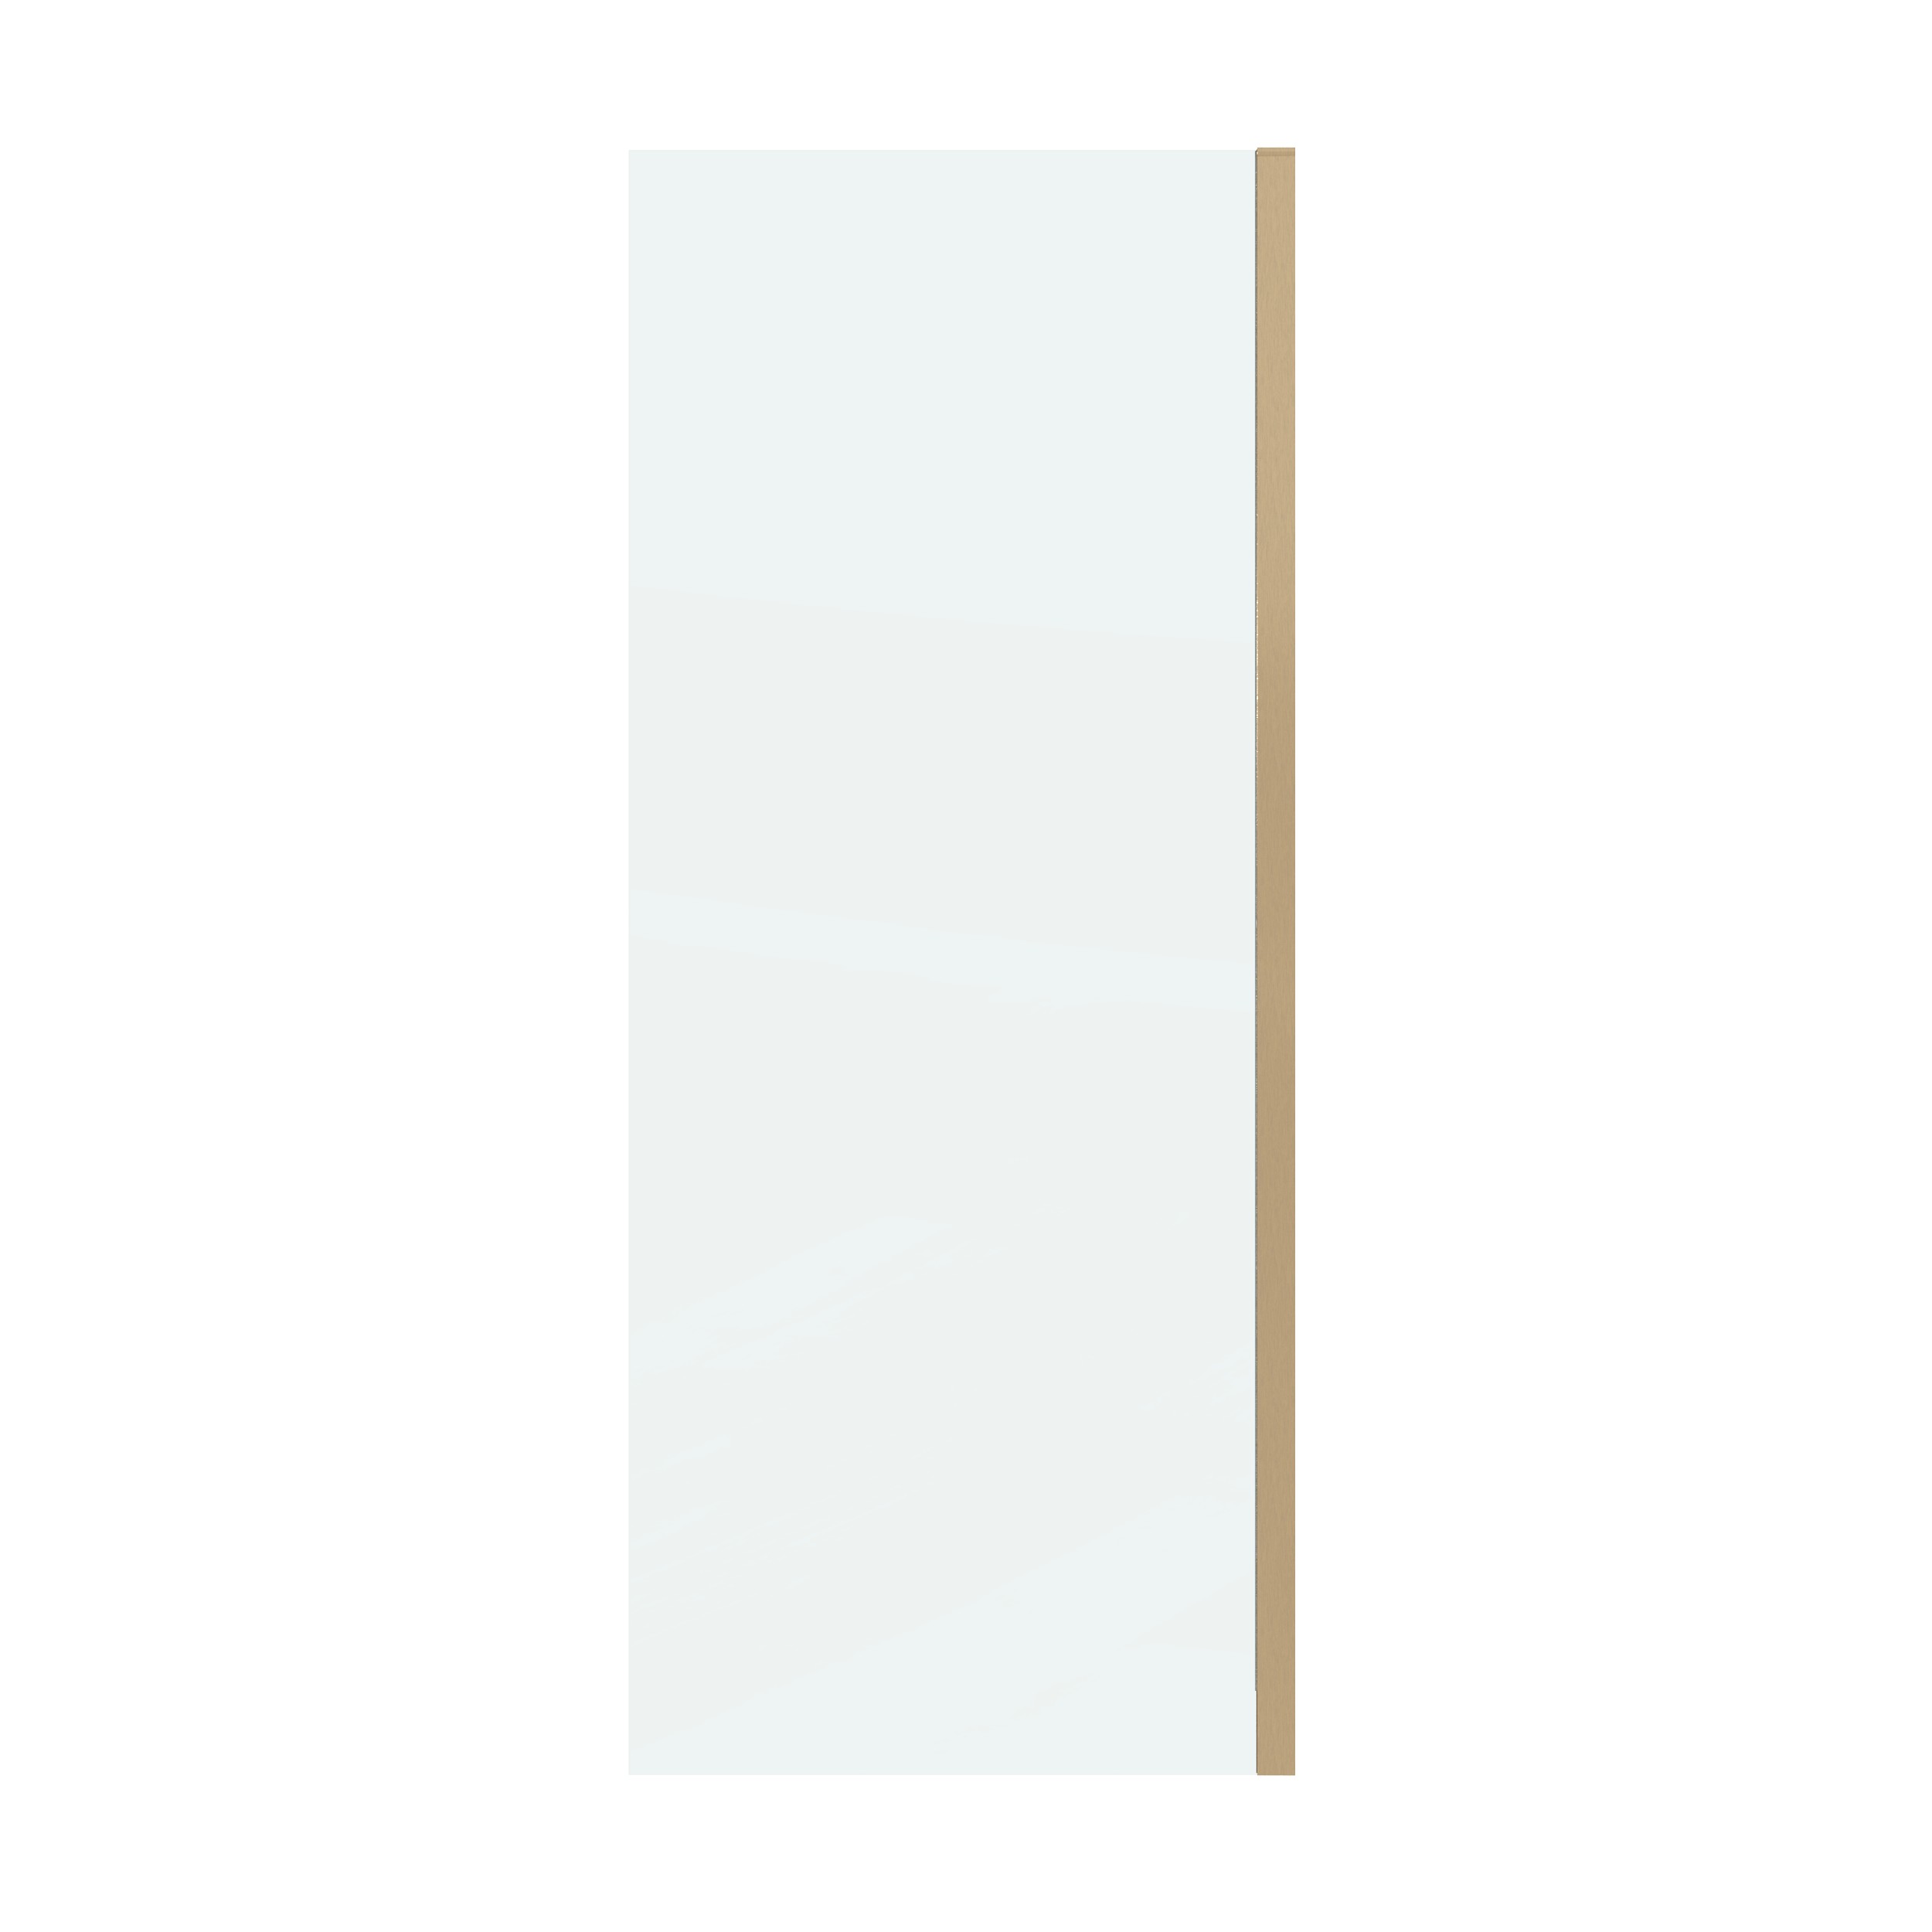 Боковая стенка Grossman Classic 90x195 200.K33.04.90.32.00 стекло прозрачное, профиль золото